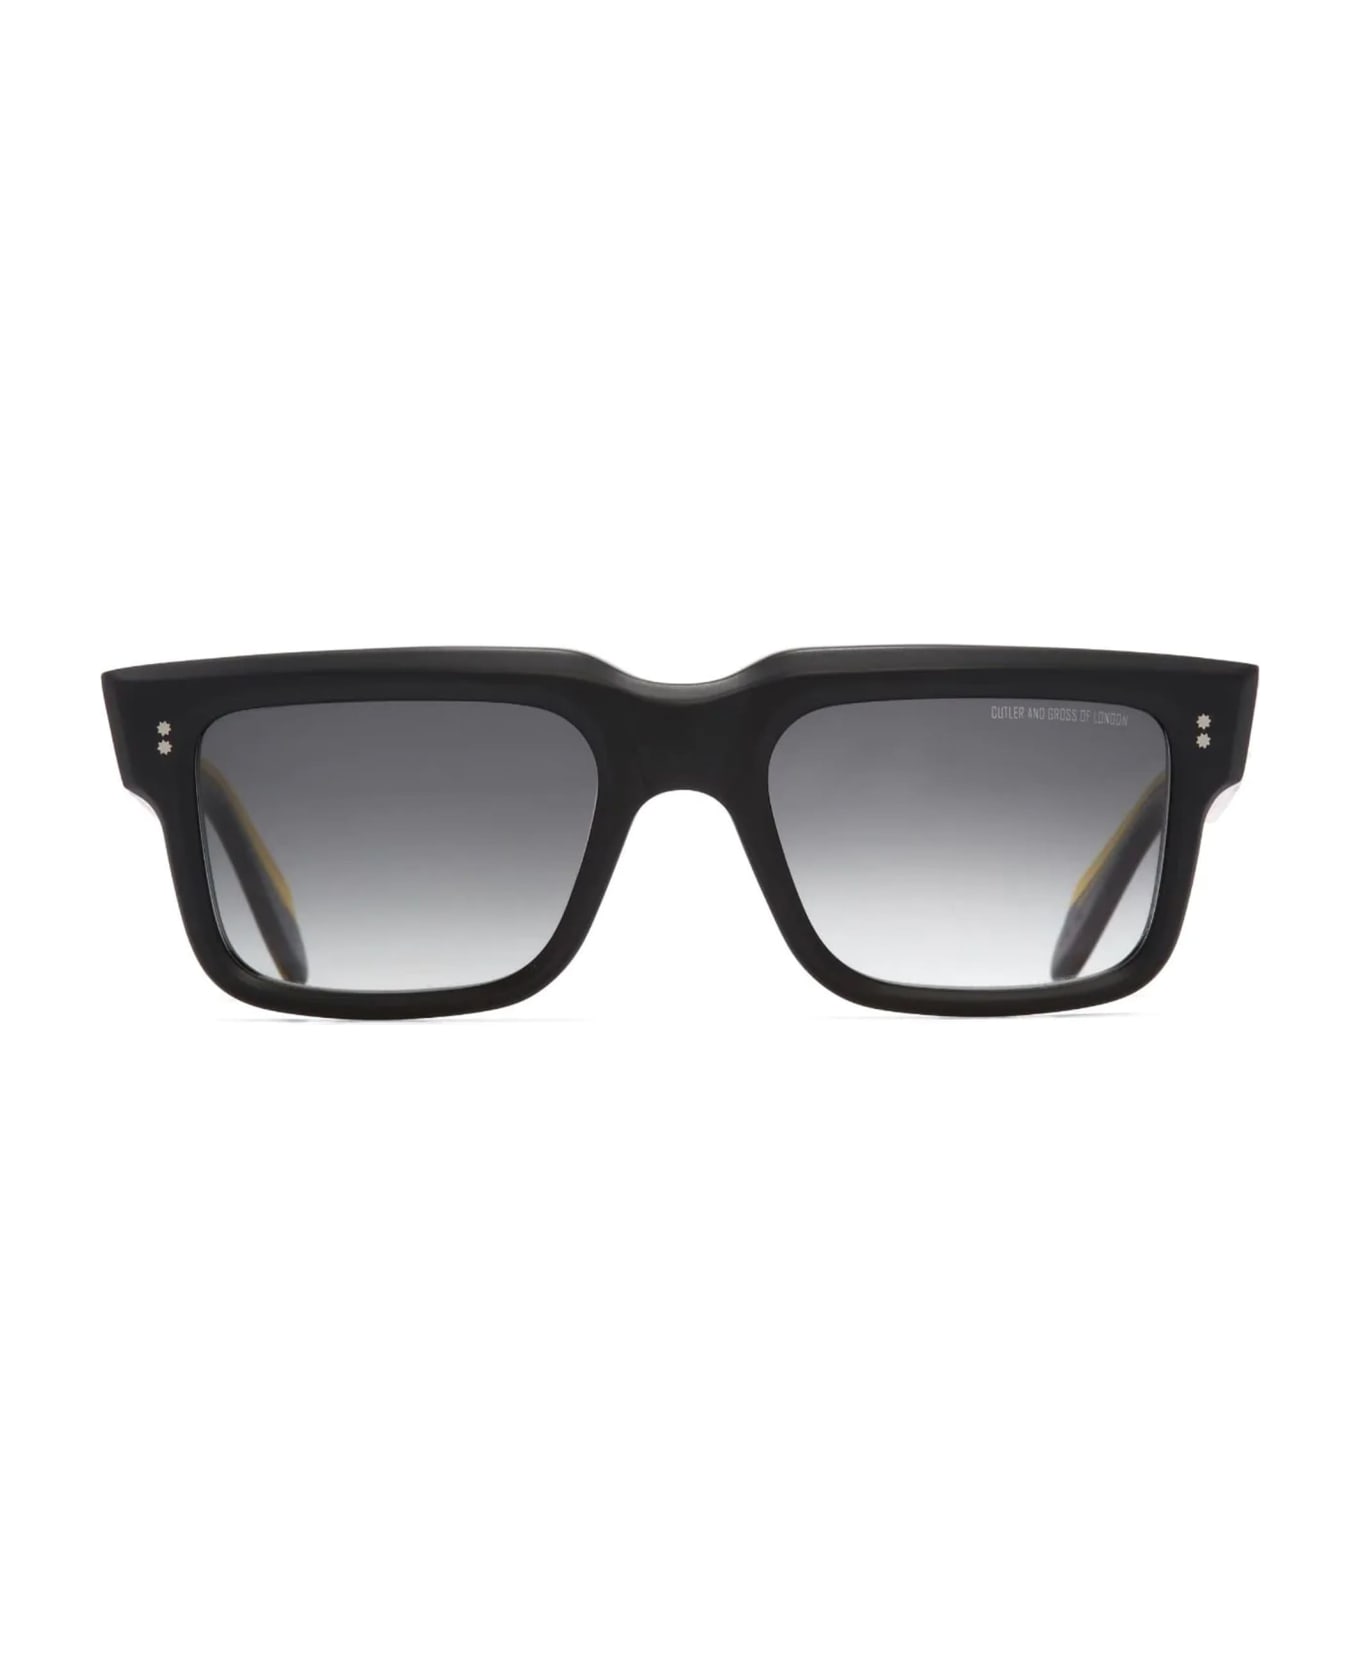 Cutler and Gross 1403 - Matte Black Sunglasses - Matte black